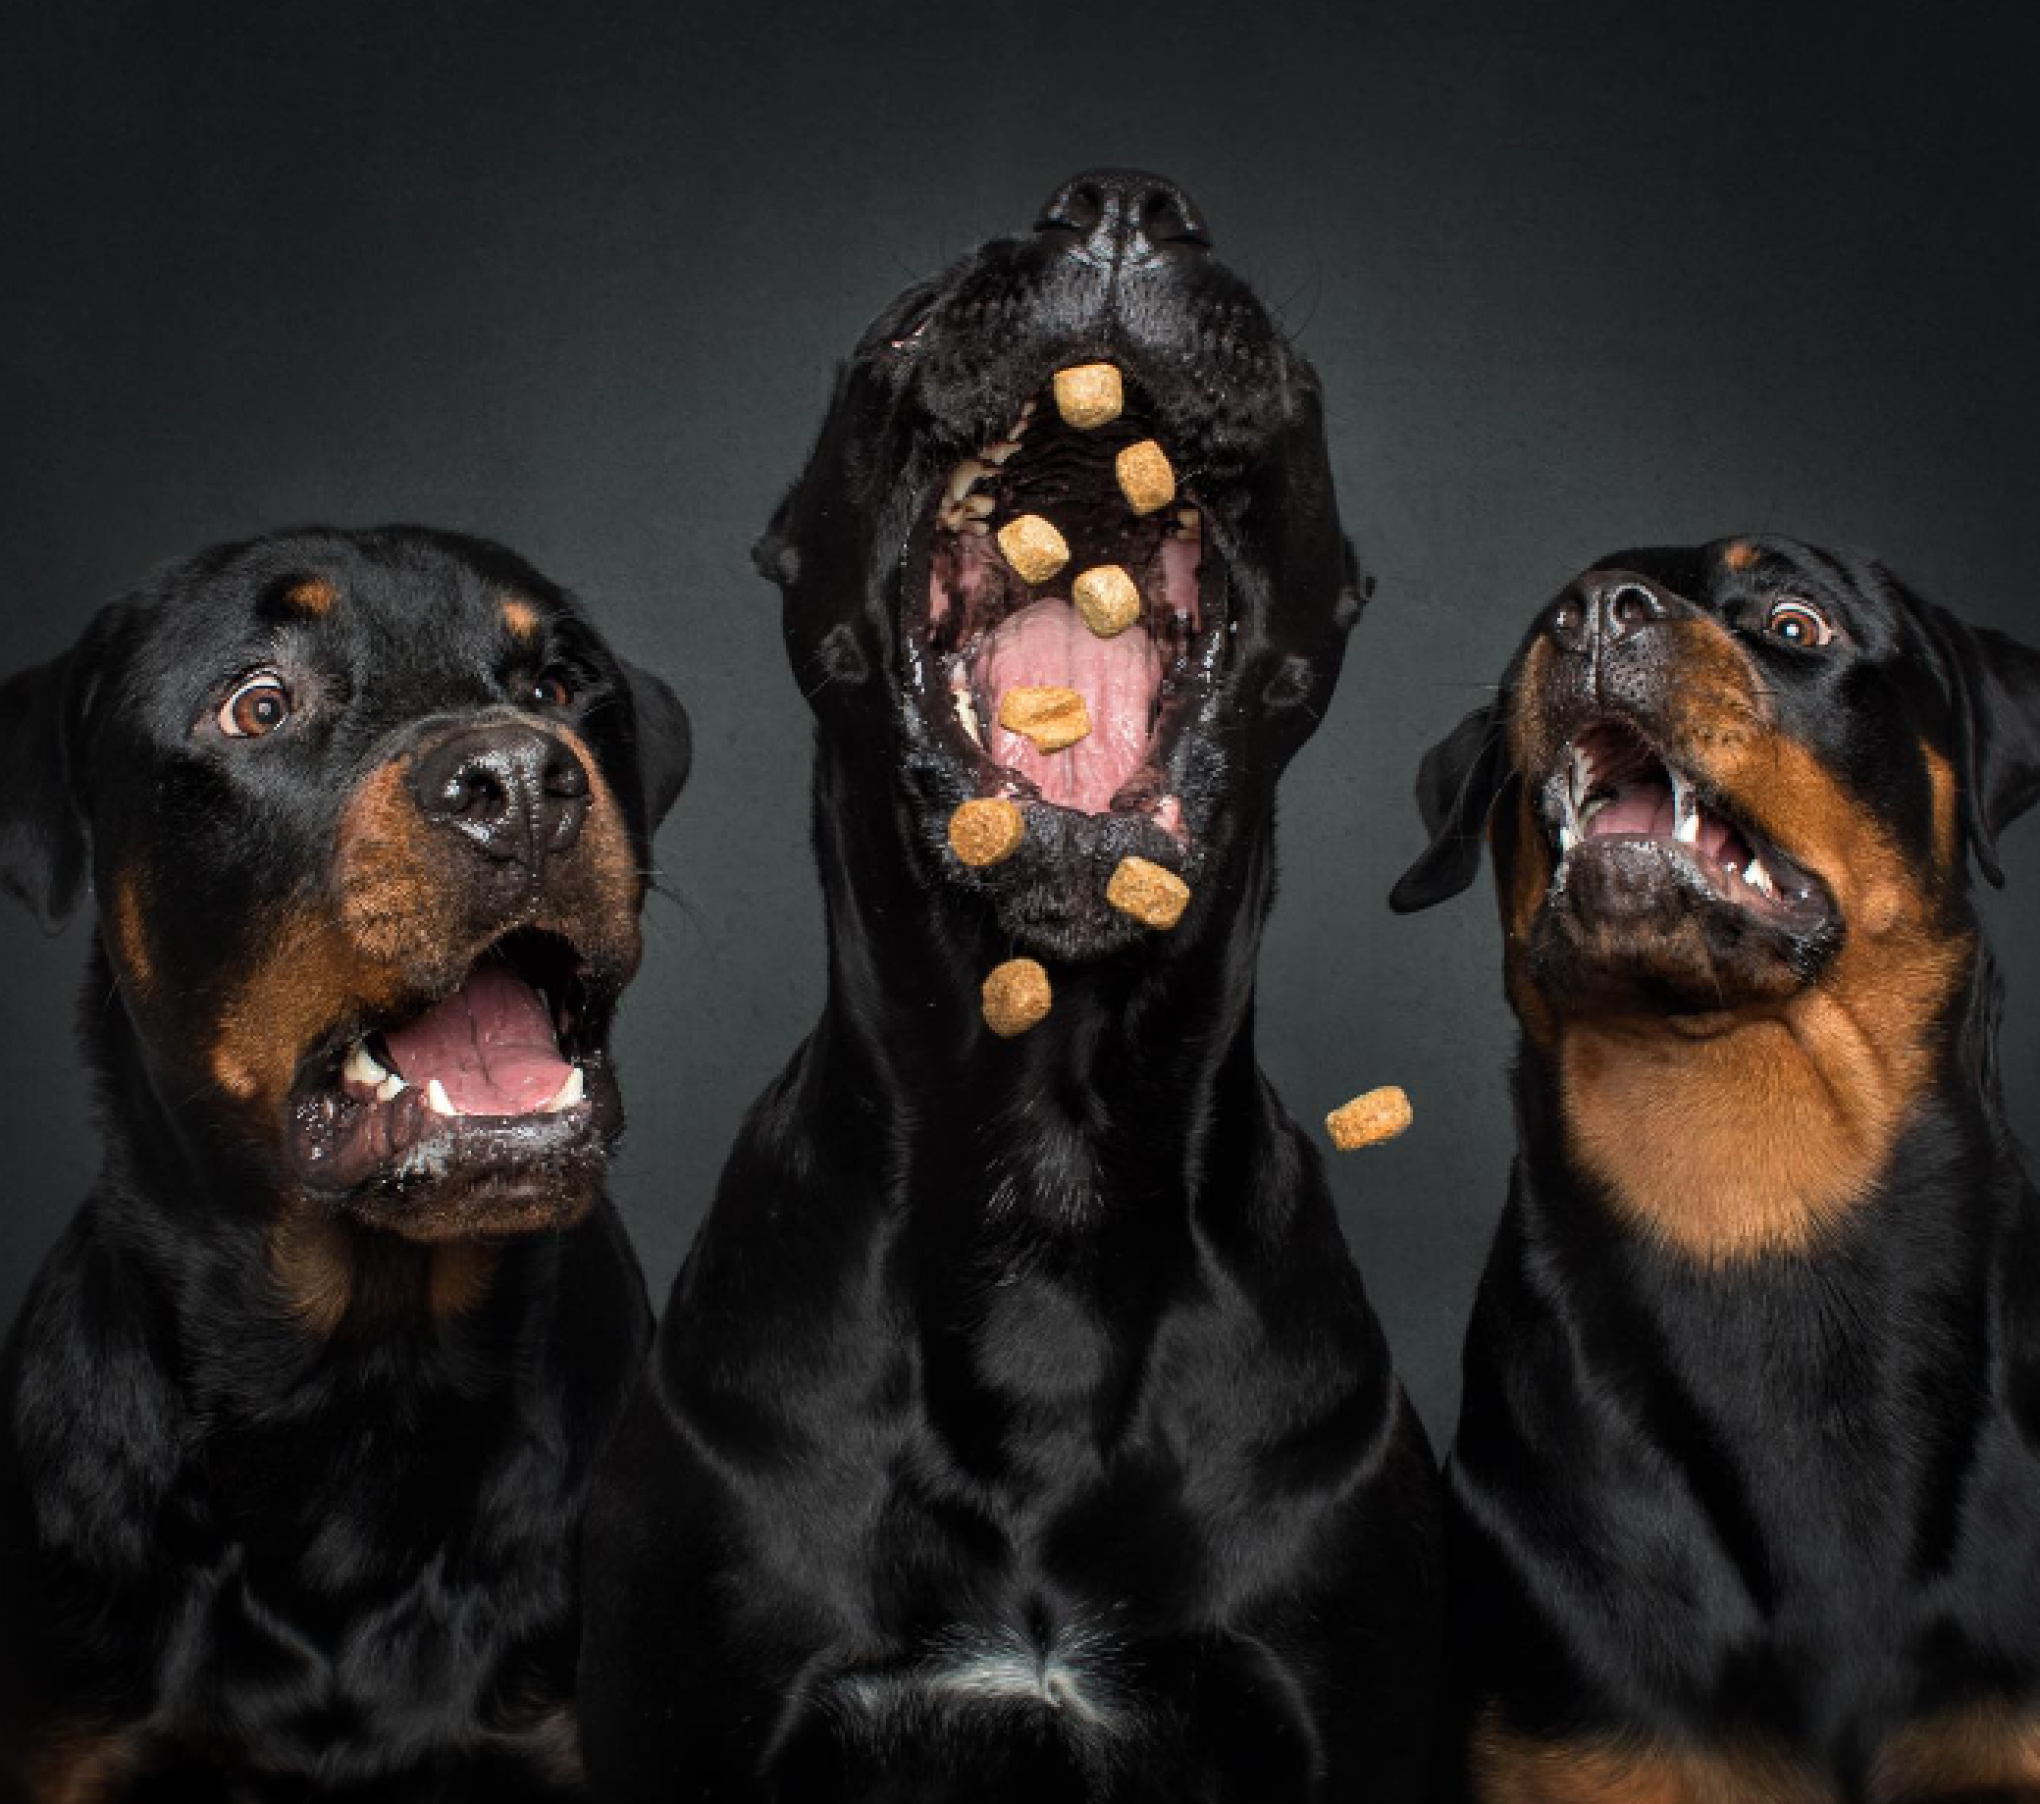 PET FOTO: Veja a emoção de cães no exato momento em que recebem guloseimas; fotógrafo registra cenas fofas e engraçadas